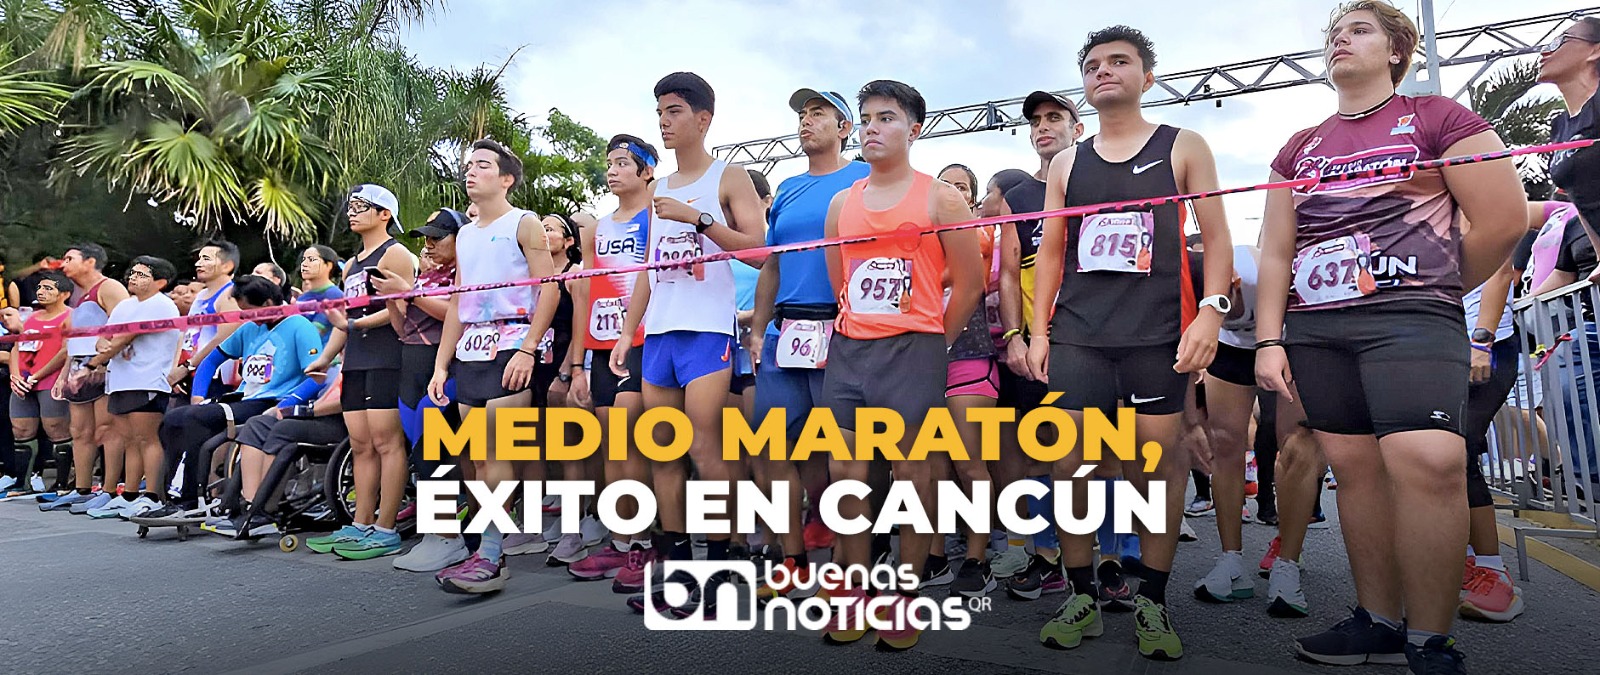 Video: Regresa a Cancún el segundo maratón más antiguo del país